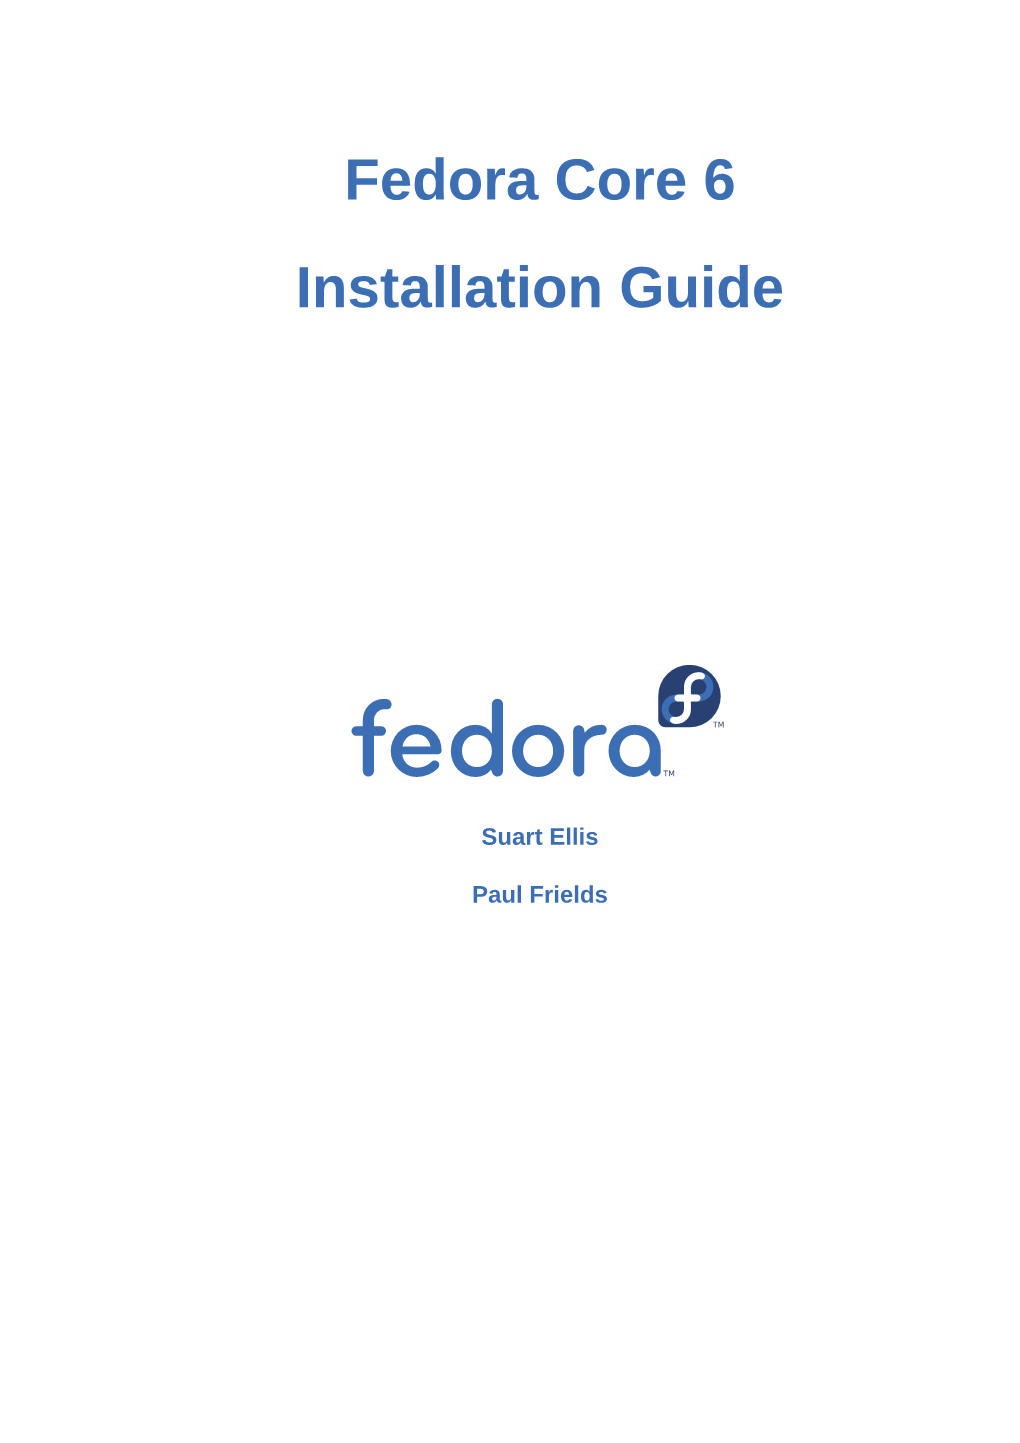 Fedora Core 6 Installation Guide